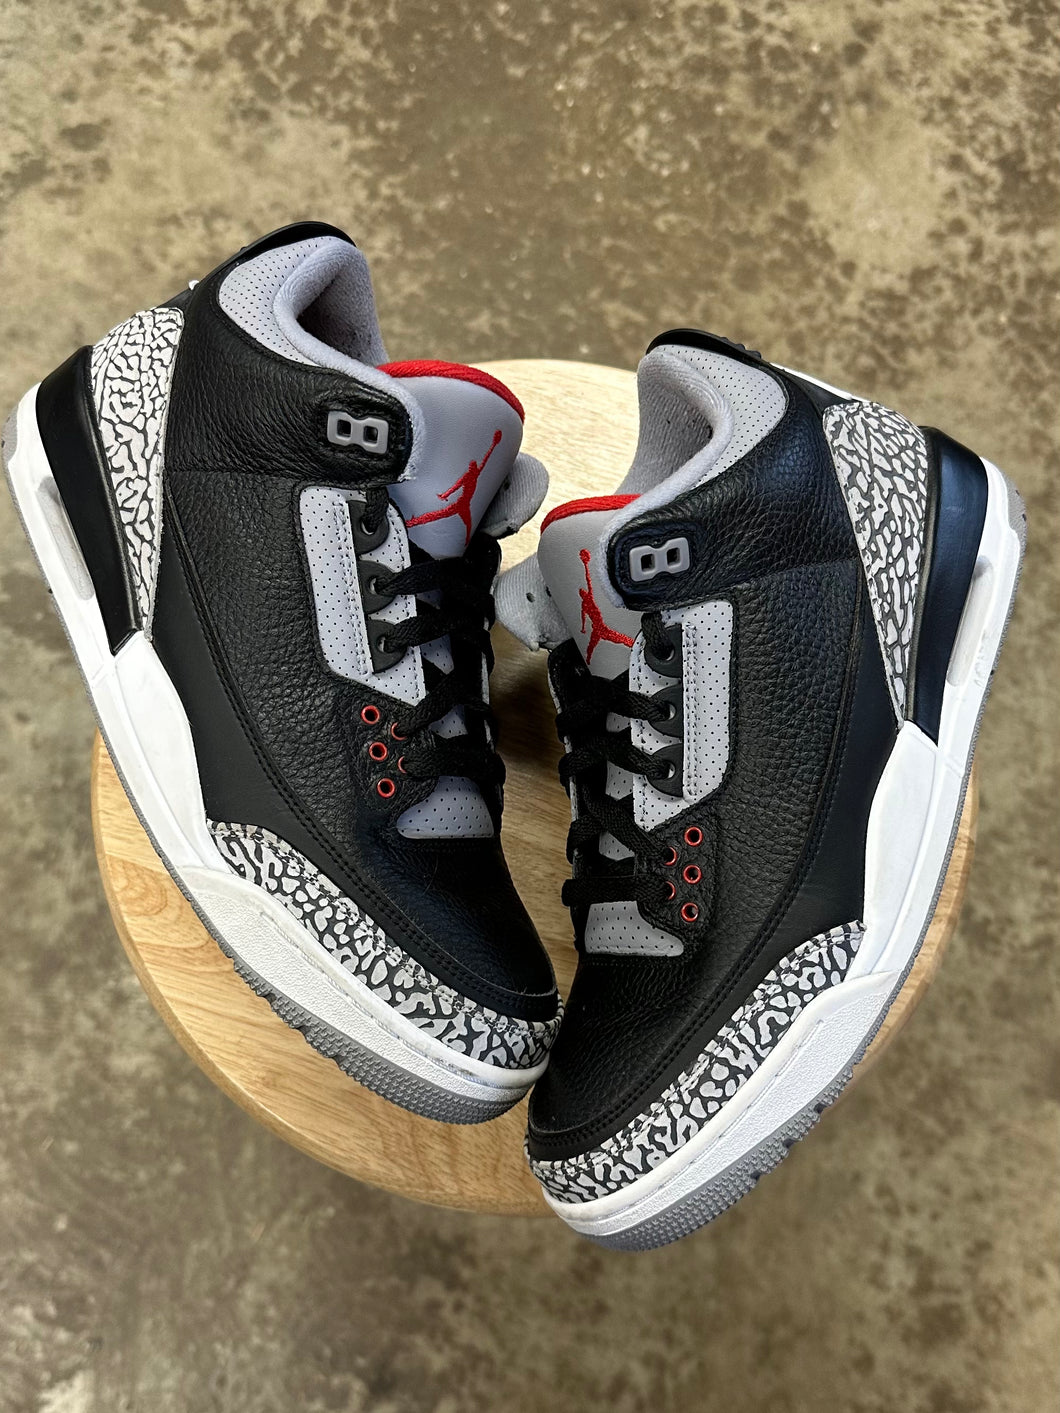 Jordan 3 Black Cement (9.5)